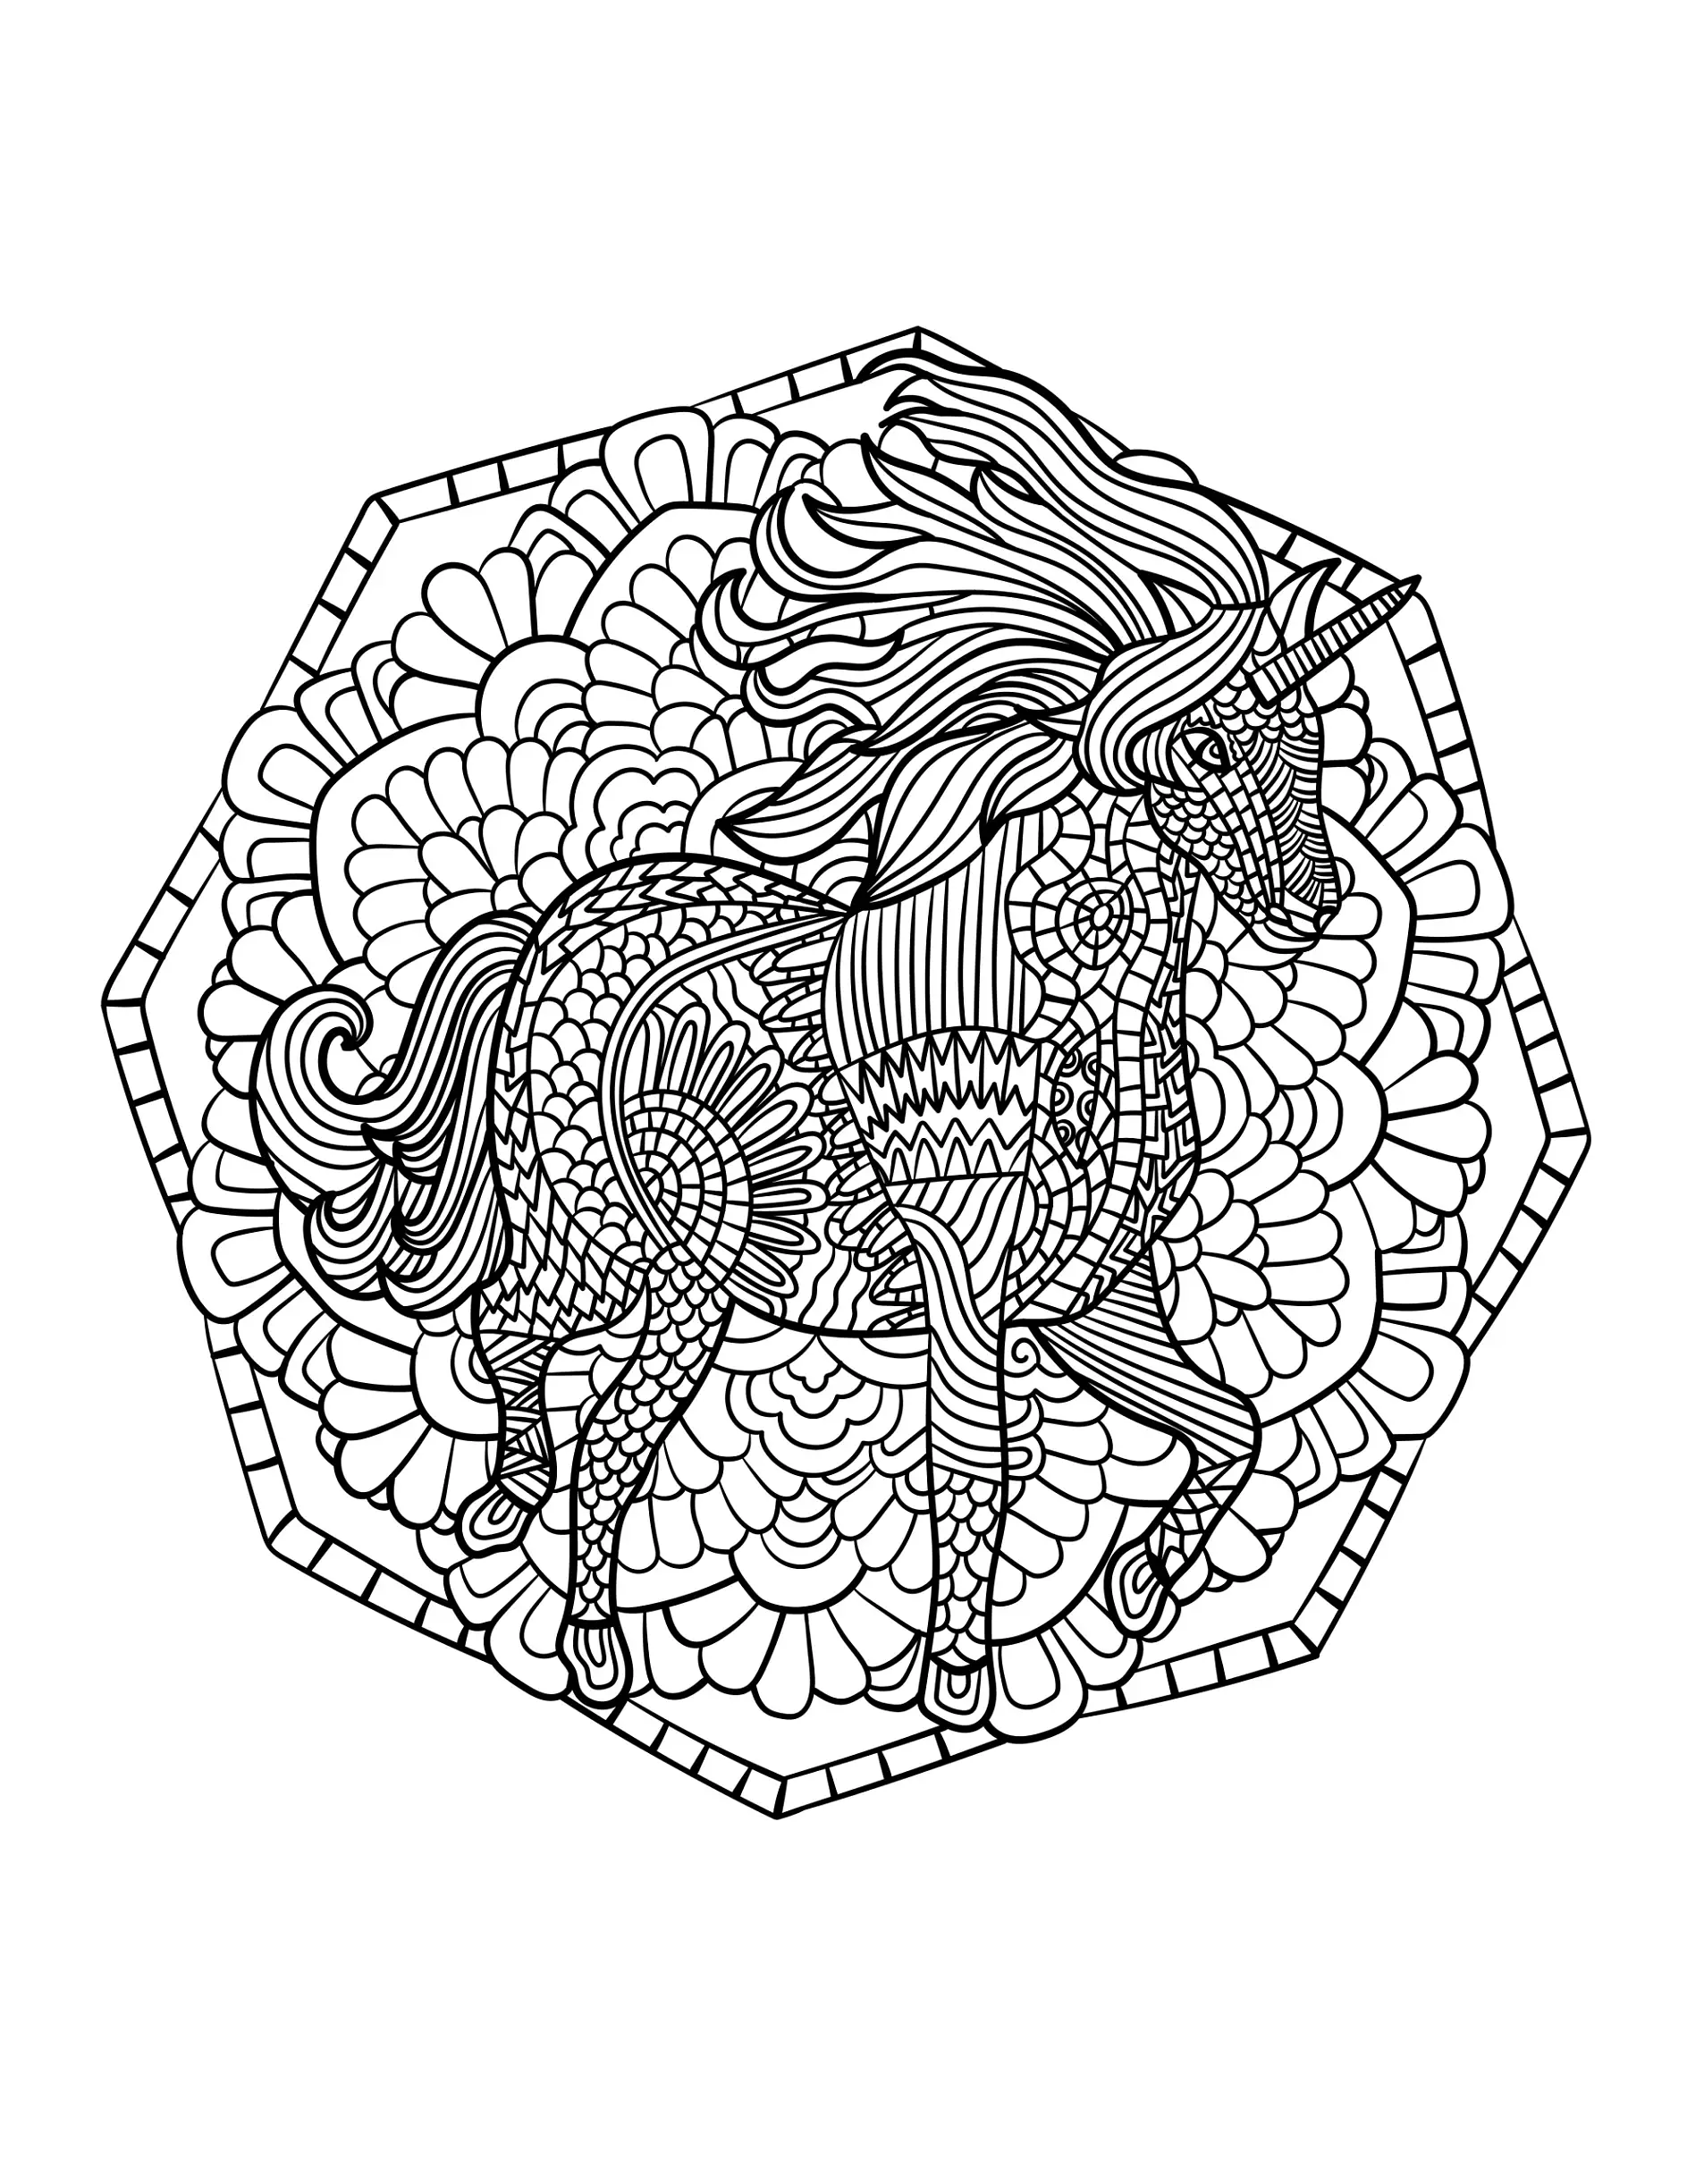 Ausmalbild Mandala Einhorn mit detailliertem Muster